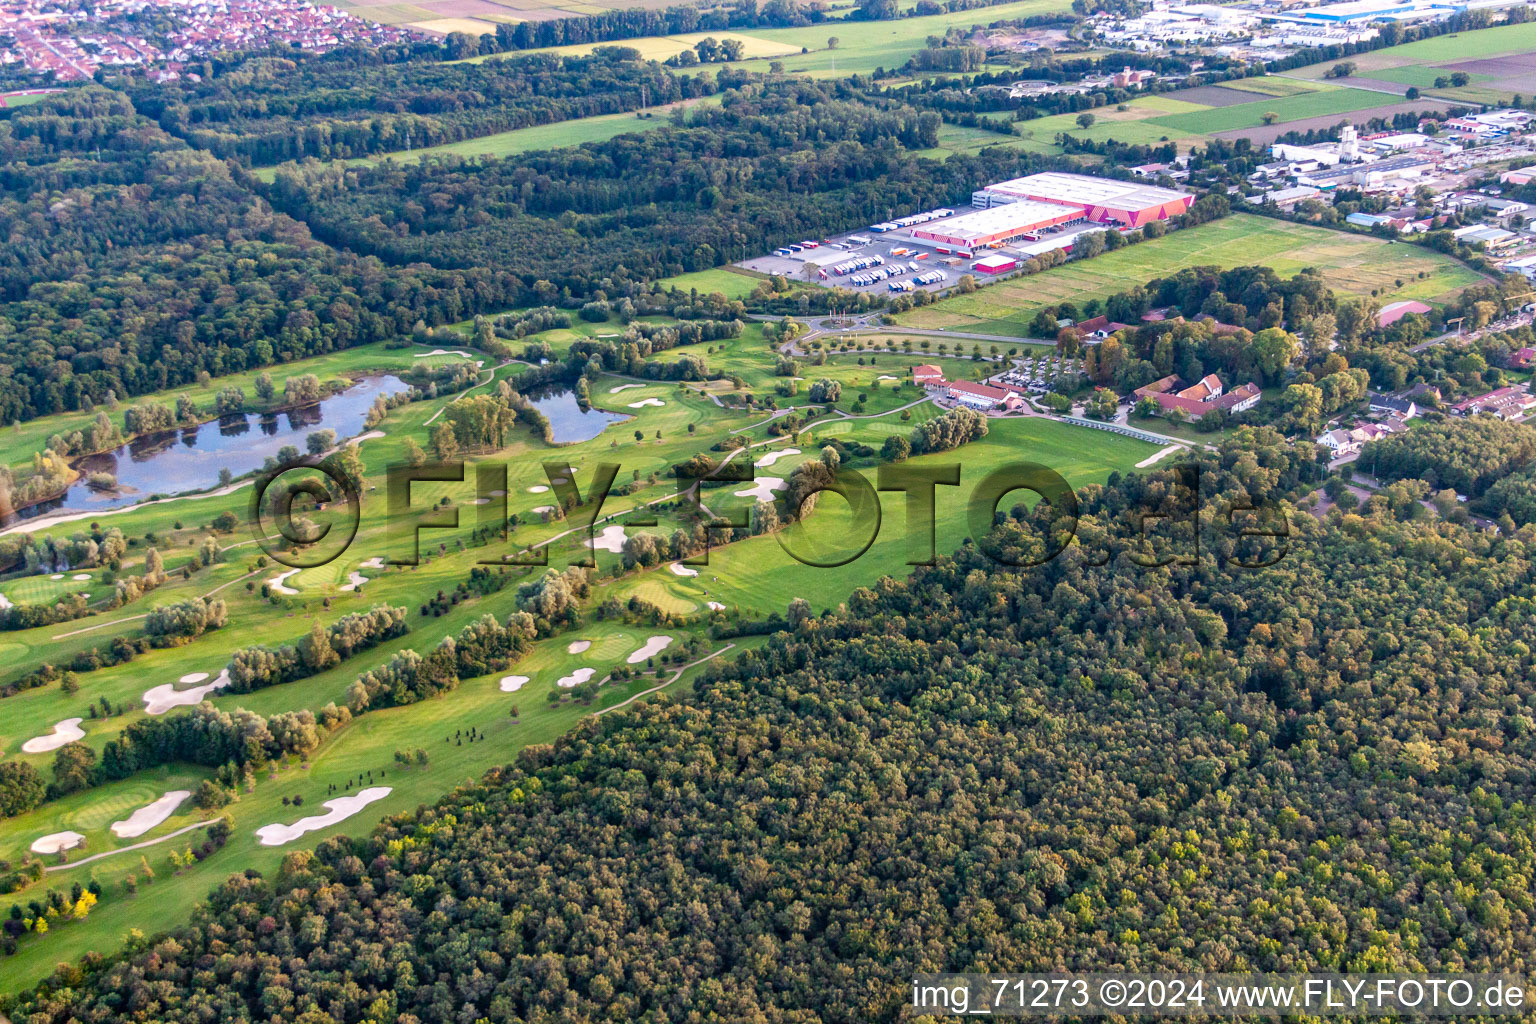 Luftbild von Golfclub Dreihof in Essingen im Bundesland Rheinland-Pfalz, Deutschland